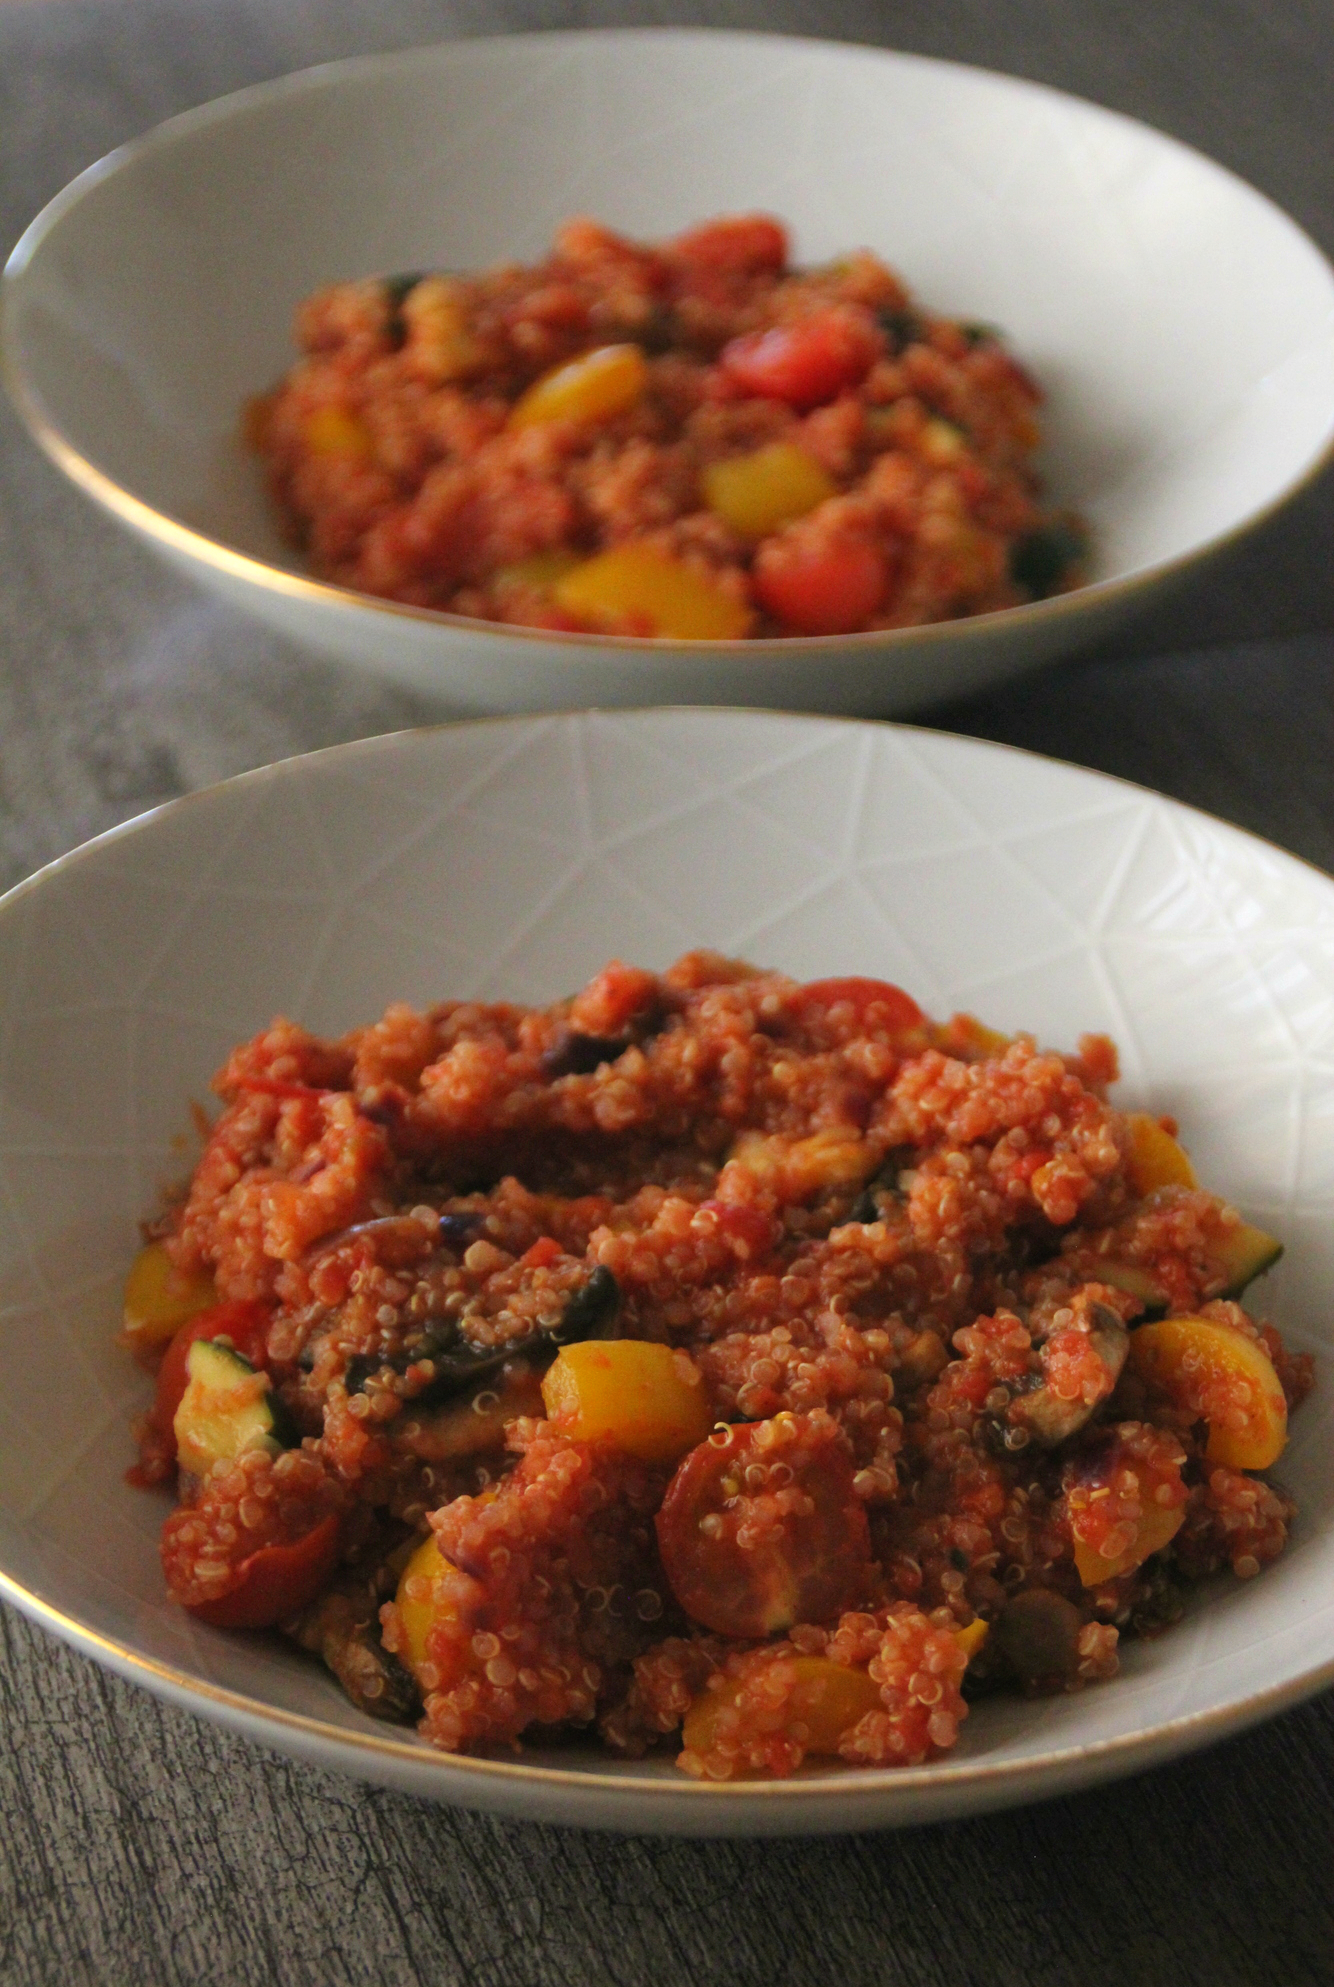 Nopea kasvis-kvinoa – Cosy Cooking | Lily